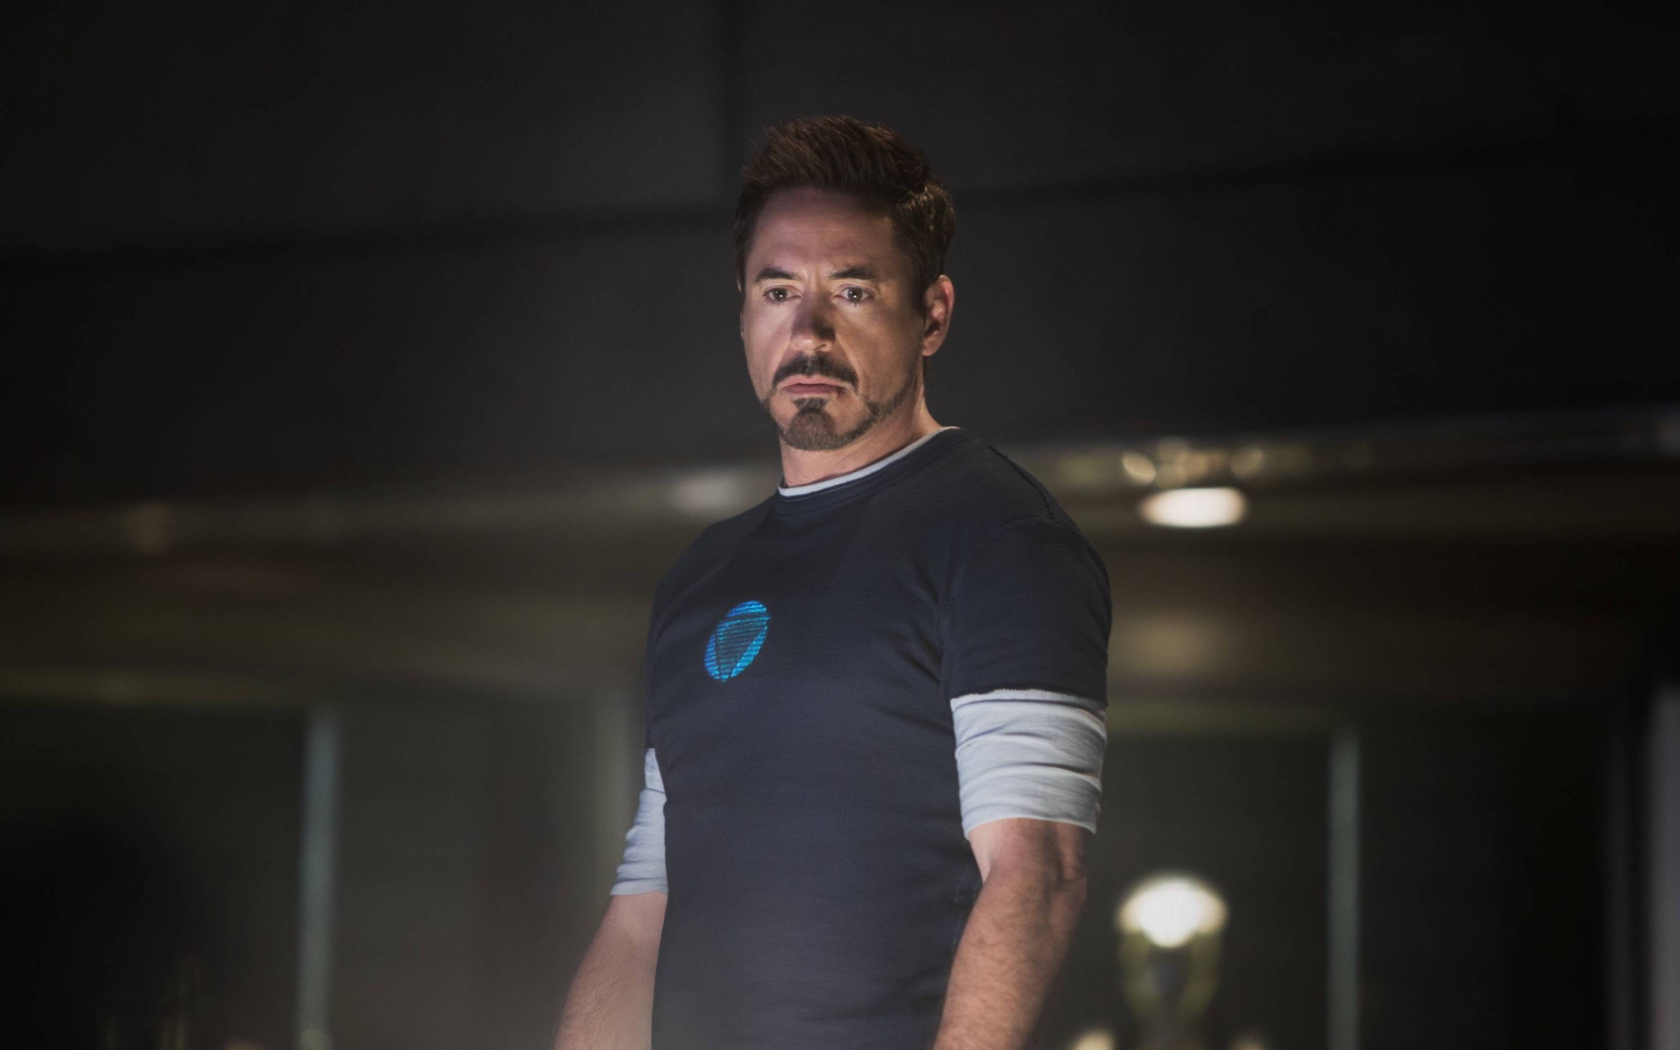 Robert Downey Jr As Iron Man 3 wallpaper 1680x1050